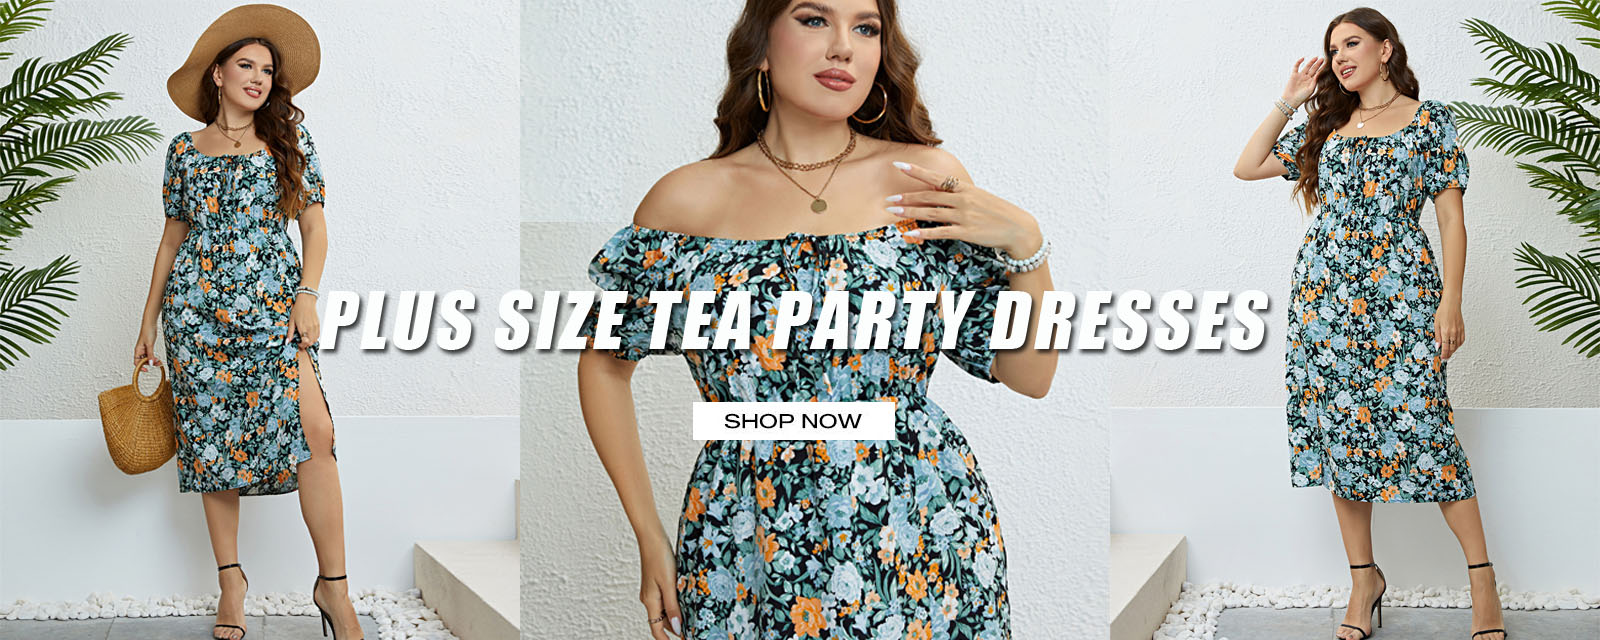 plus size tea party dresses